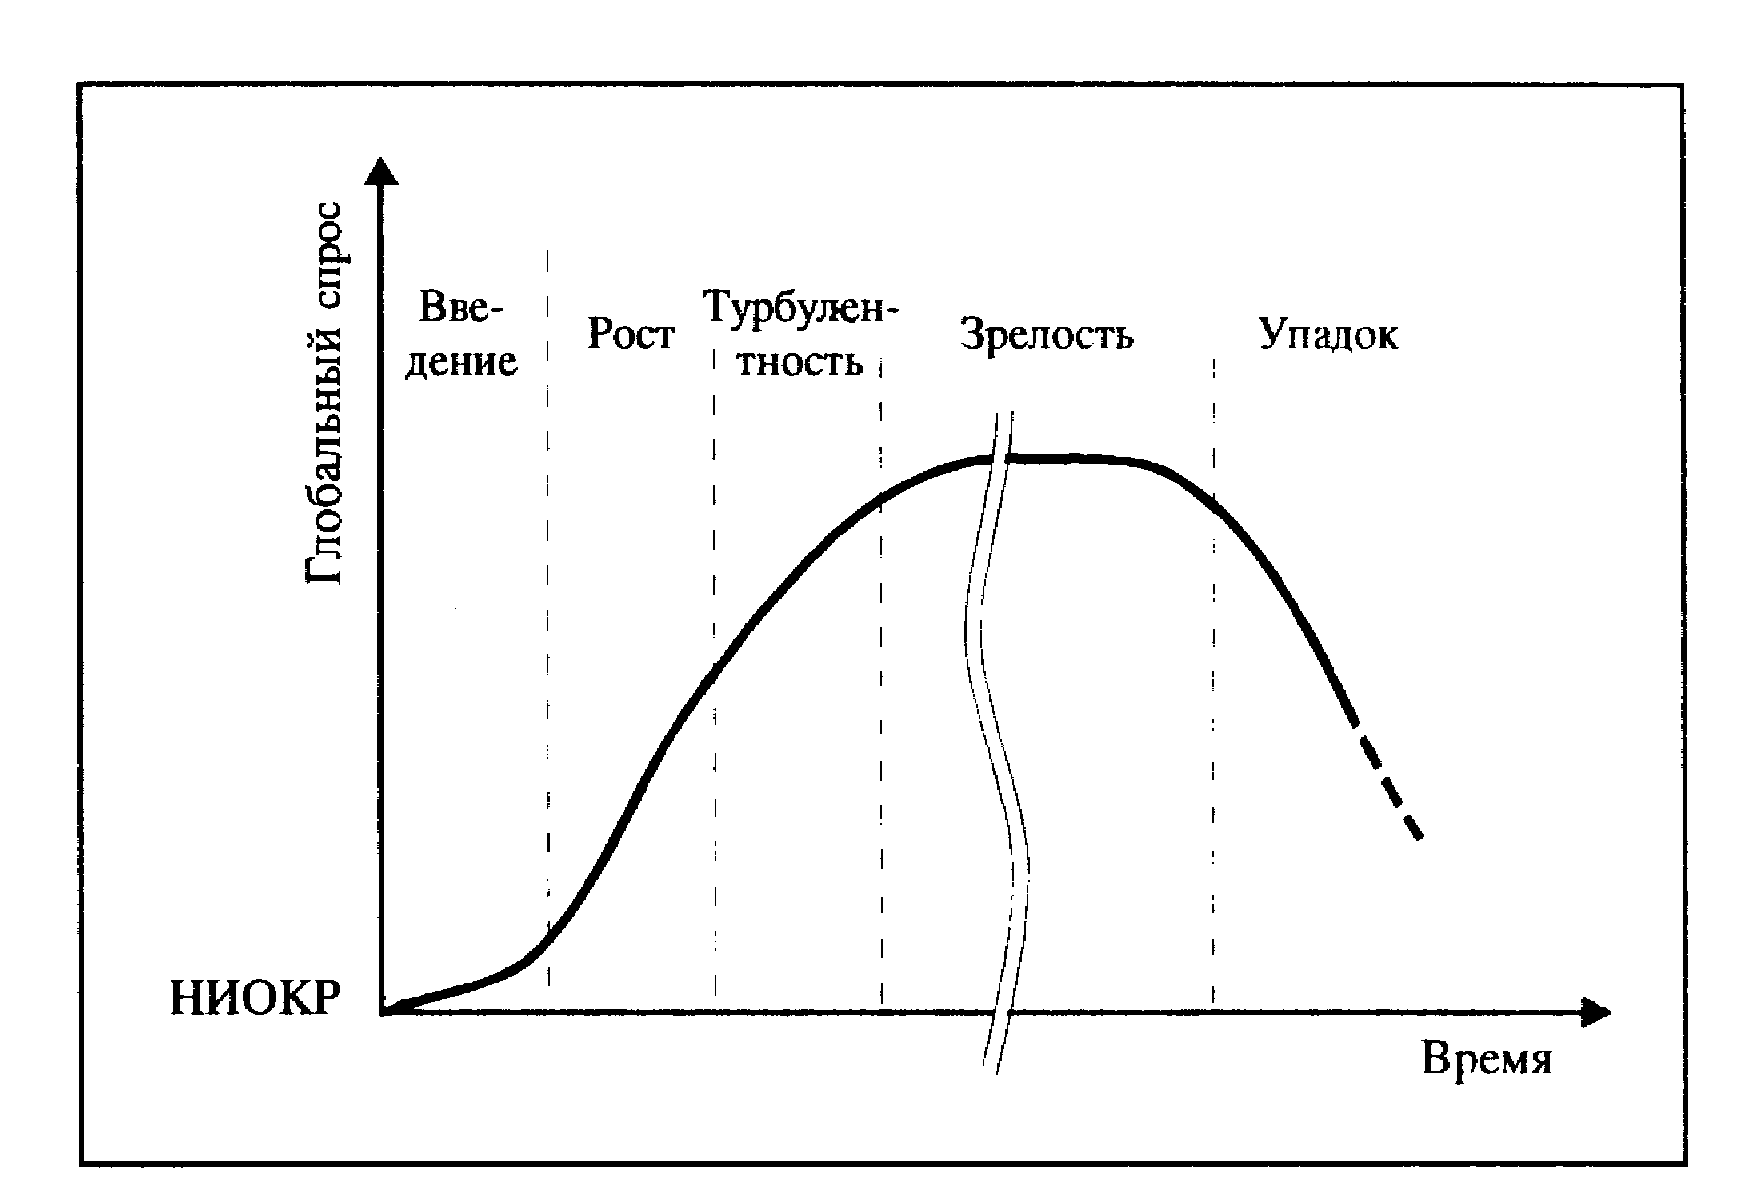 Жизненный цикл спроса